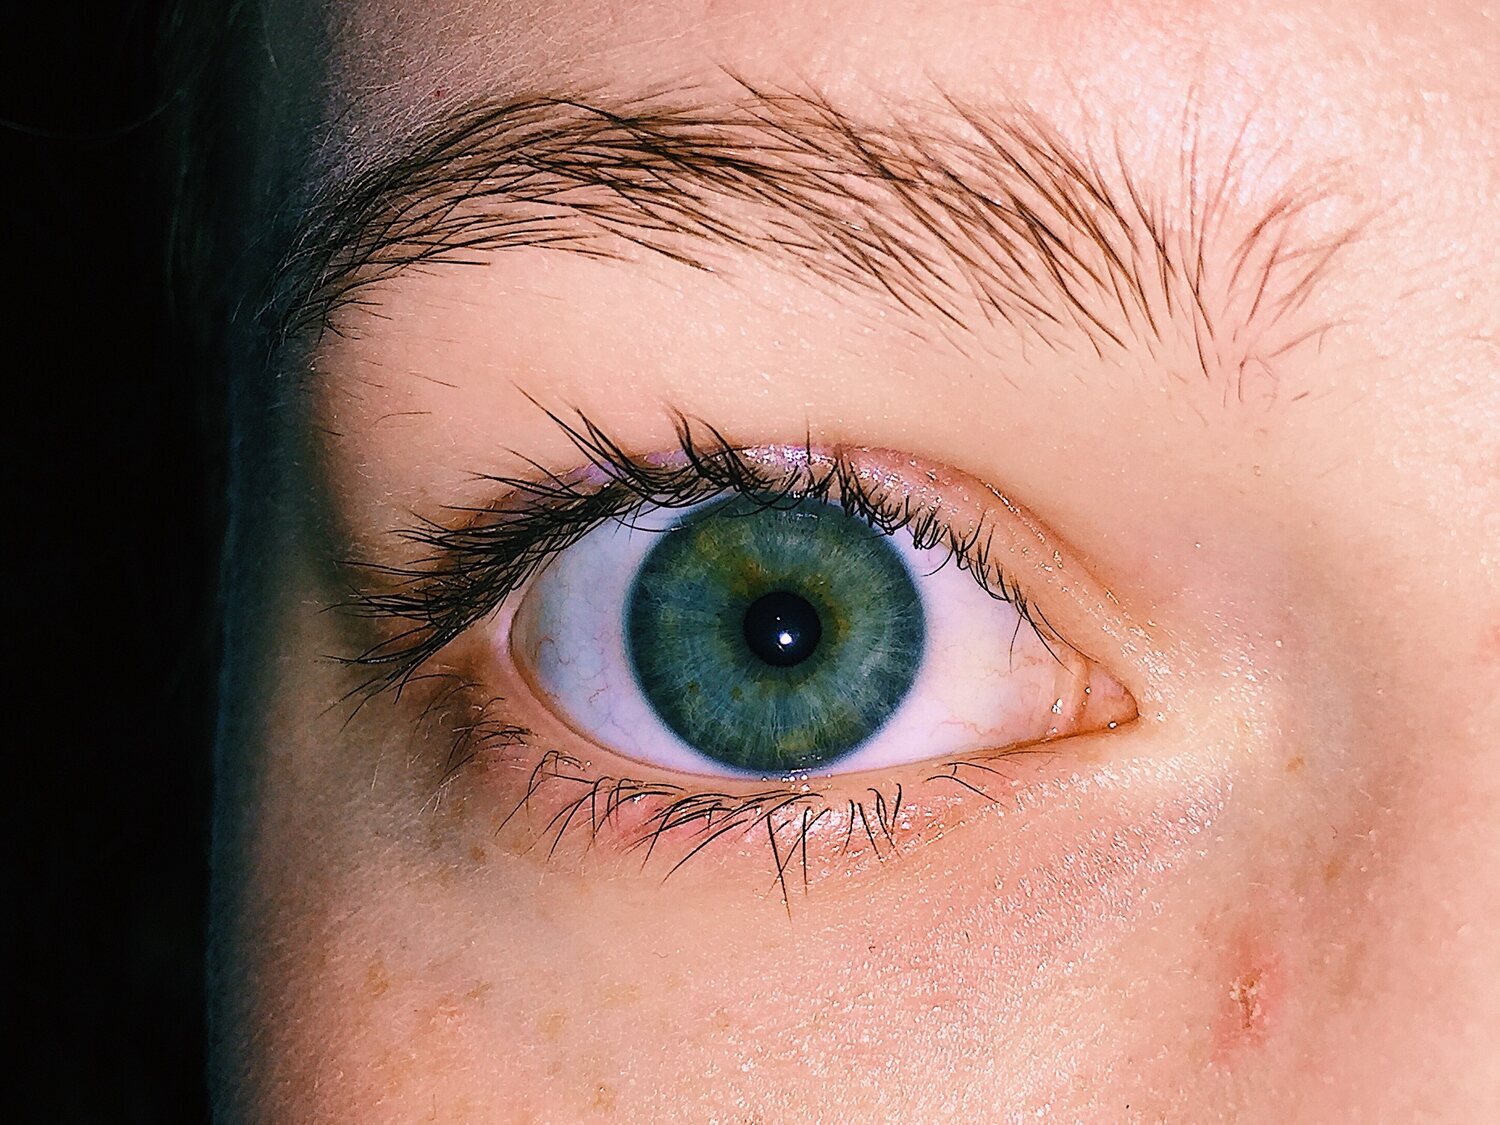 El tamaño de tu pupila refleja el poder de tu imaginación